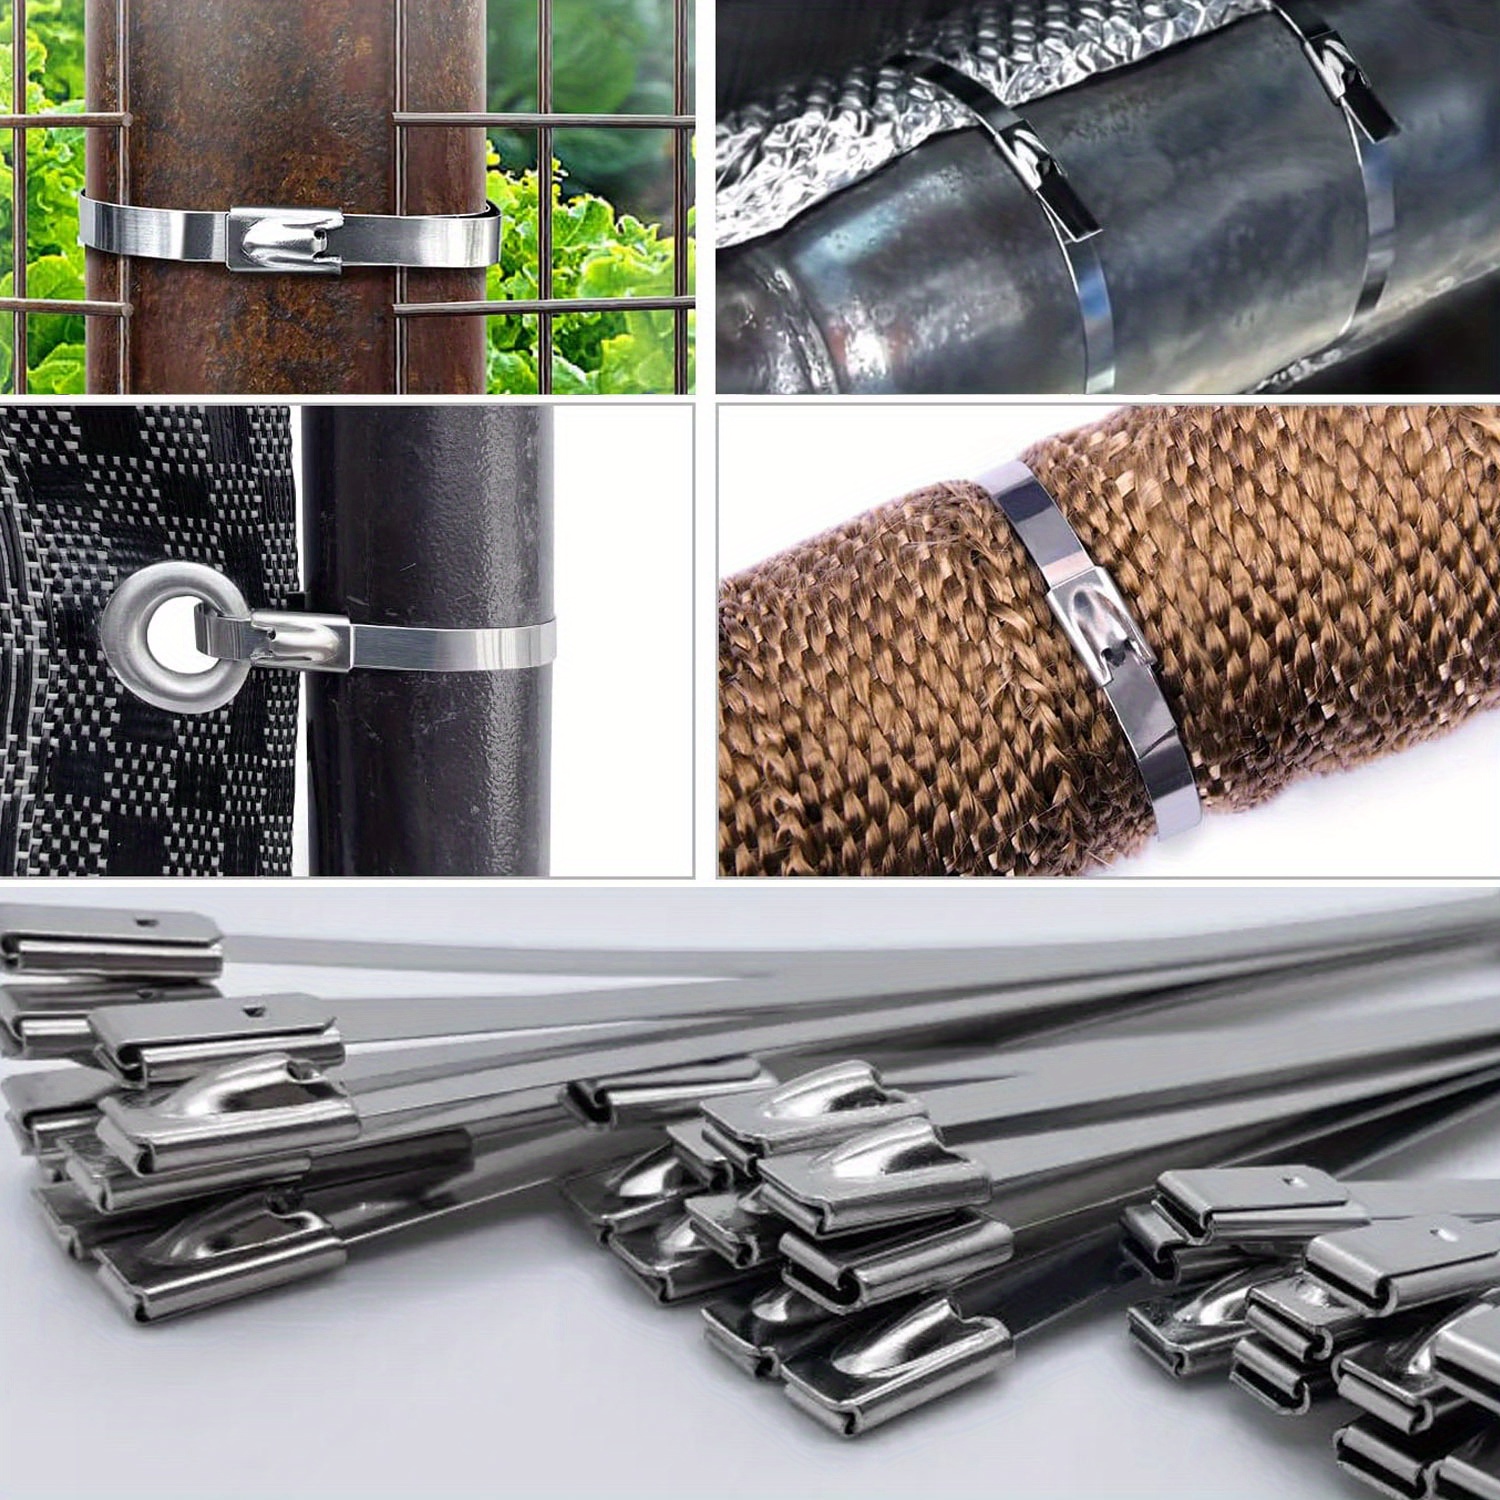 

100pcs Heavy Duty Self-locking Stainless Steel Cable Zip Ties Chain Link Fence Ties Metal Multi-purpose Metal Exhaust Wrap Locking Ties